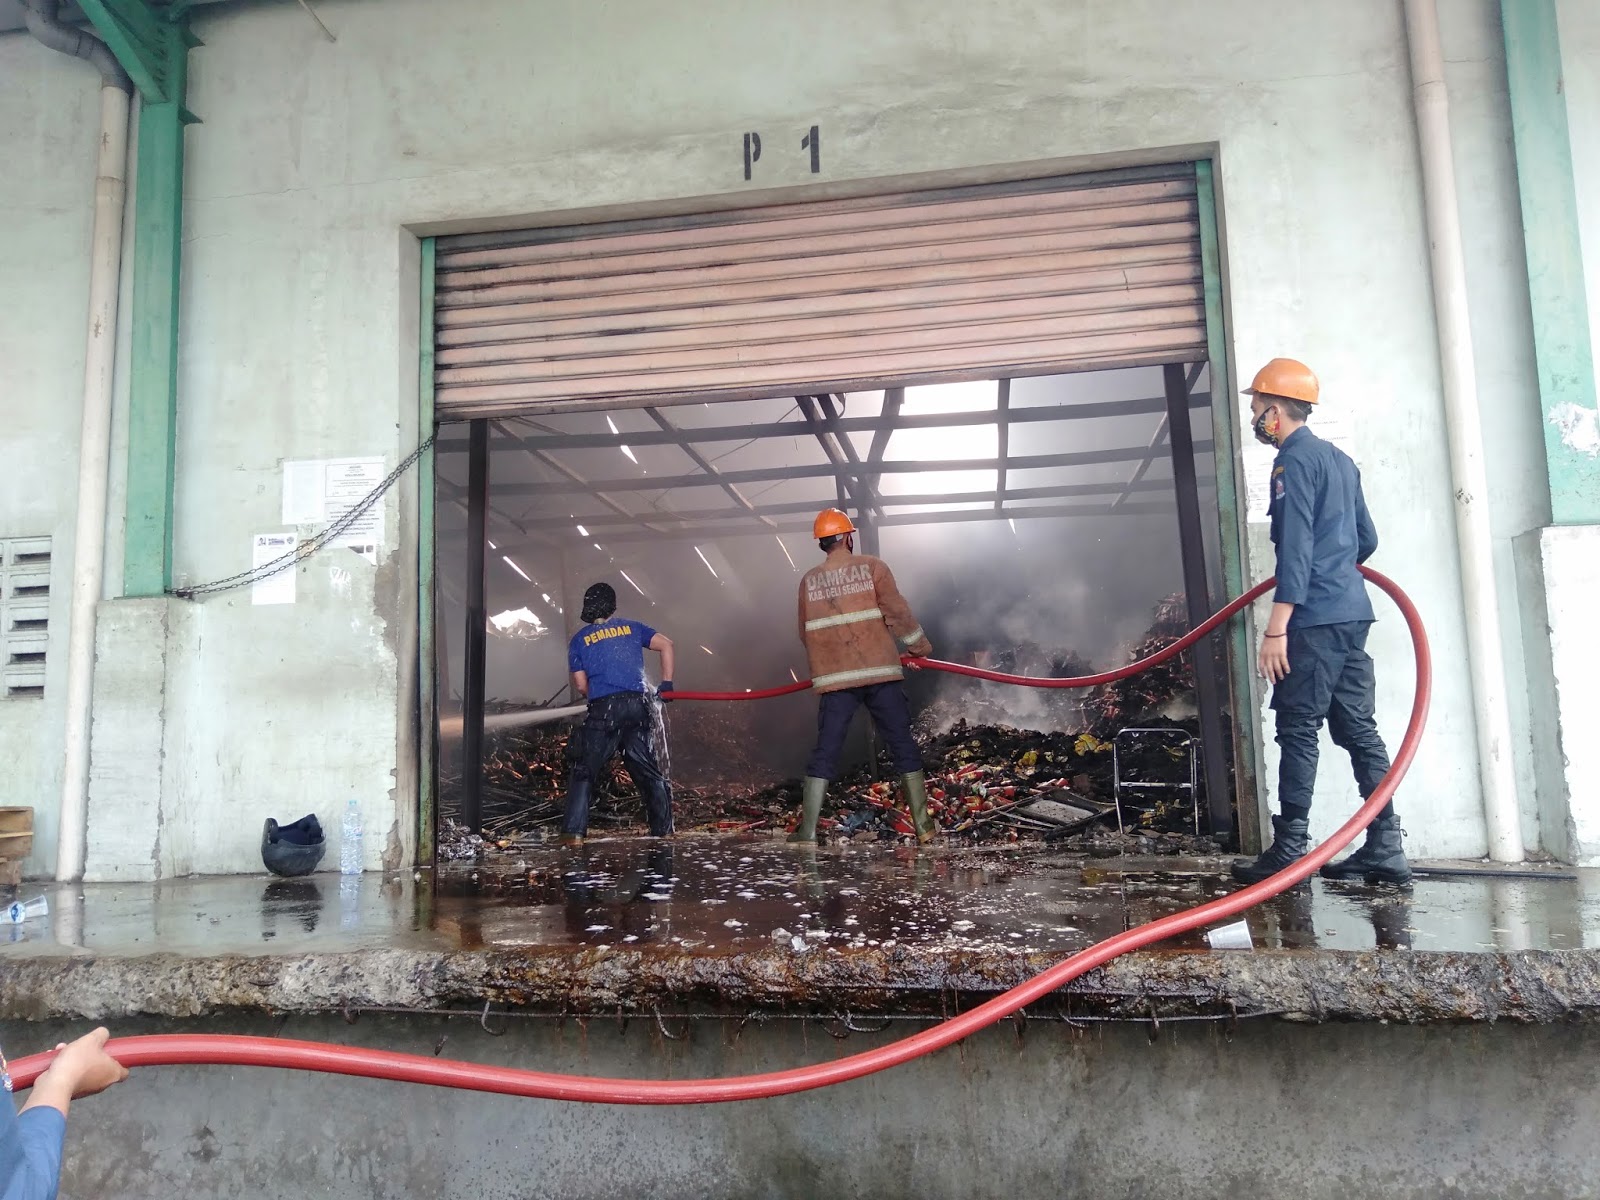 Loker Pabrik Indomie Tanjung Morawa - Pabrik Terbakar, Gaji Belum Diterima Full, Buruh Pabrik ...